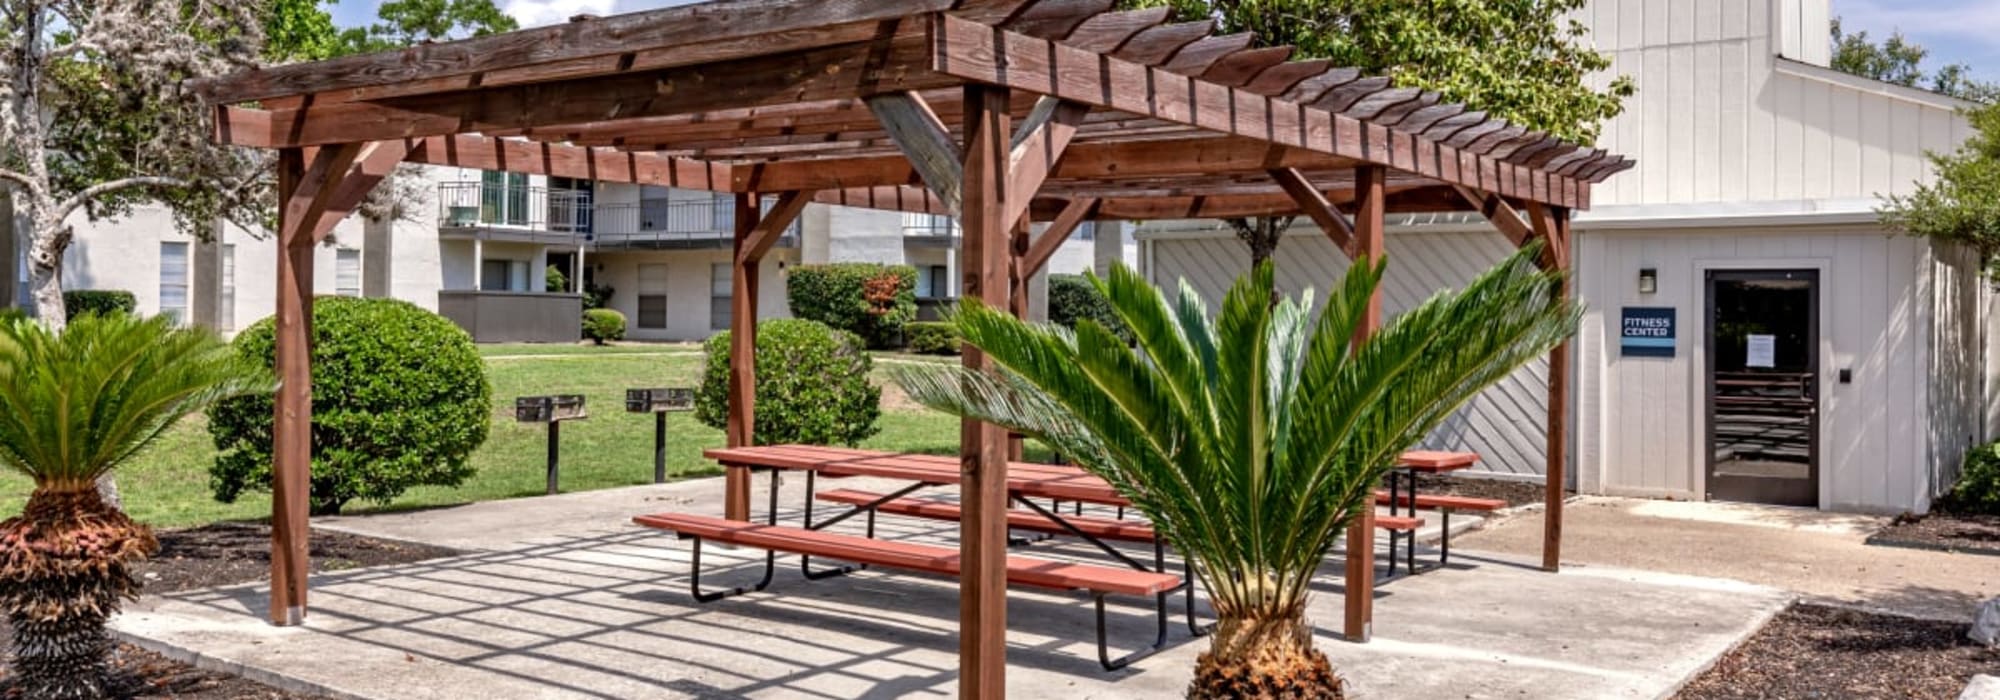 Outdoor picnic area at La Silva in San Antonio, Texas